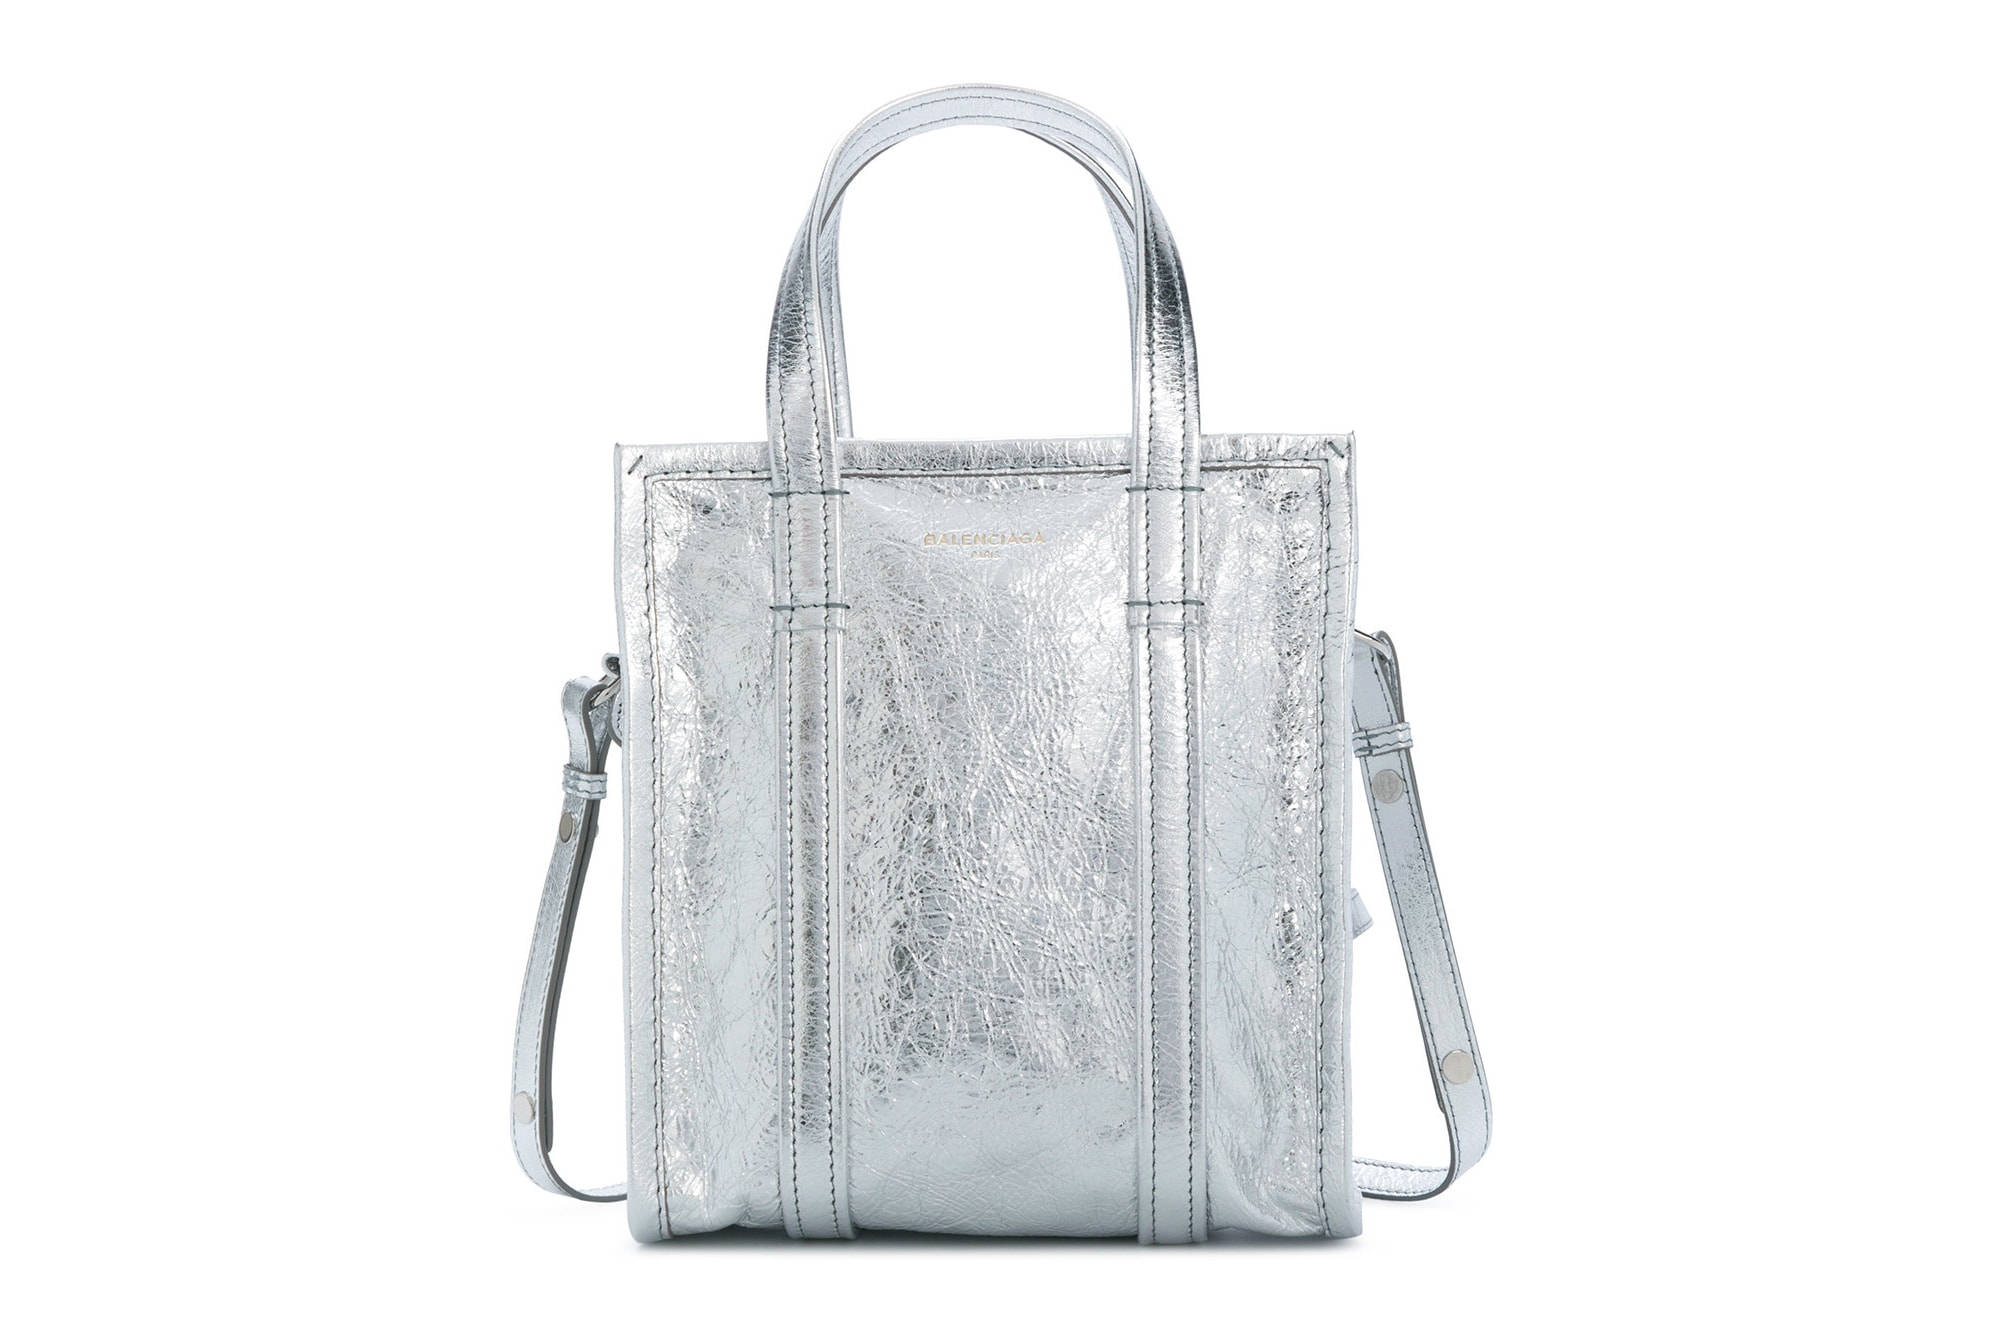 Balenciaga Silver Leather Handbag Tote Demna Gvasalia